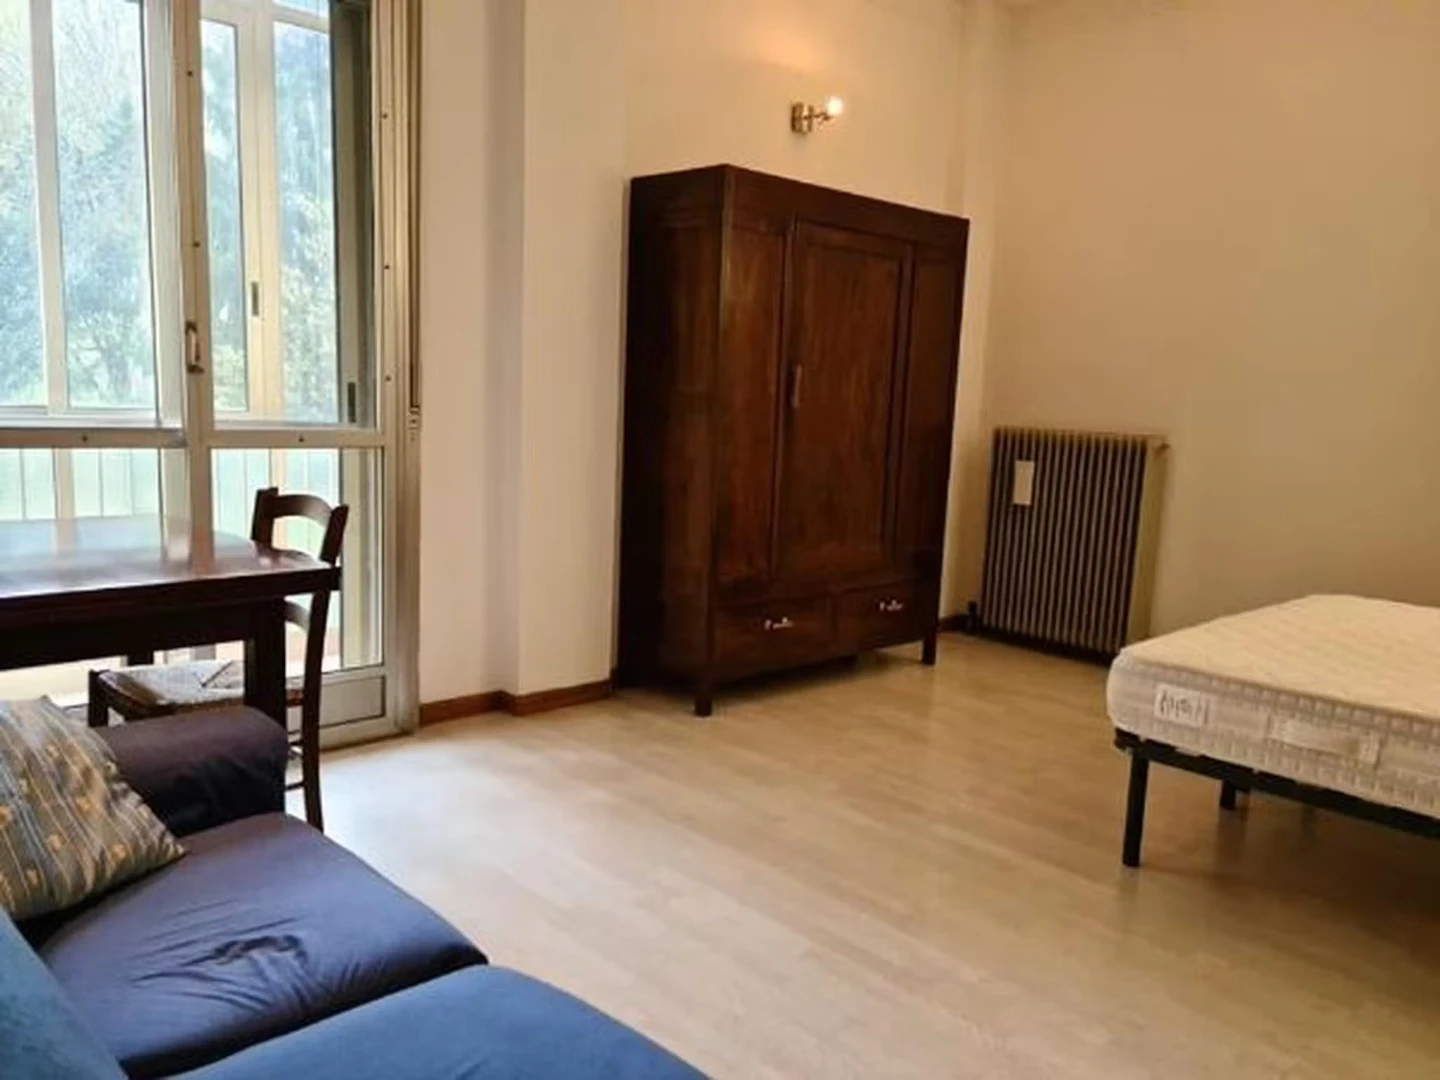 Monatliche Vermietung von Zimmern in Vicenza